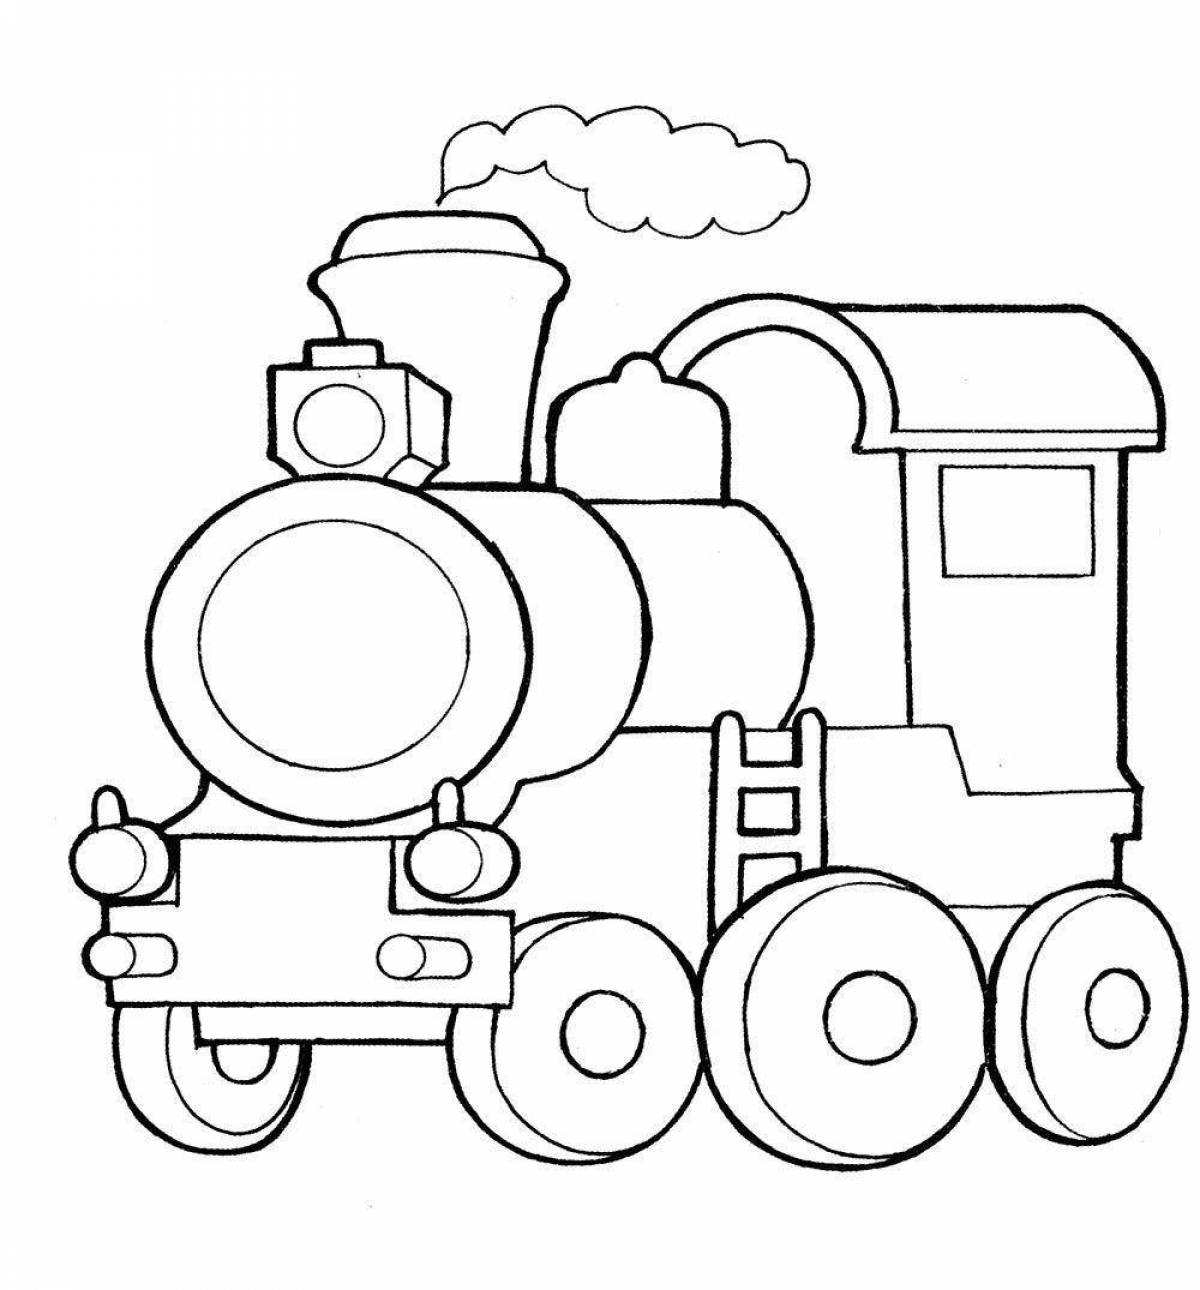 Раскраска яркий поезд для дошкольников